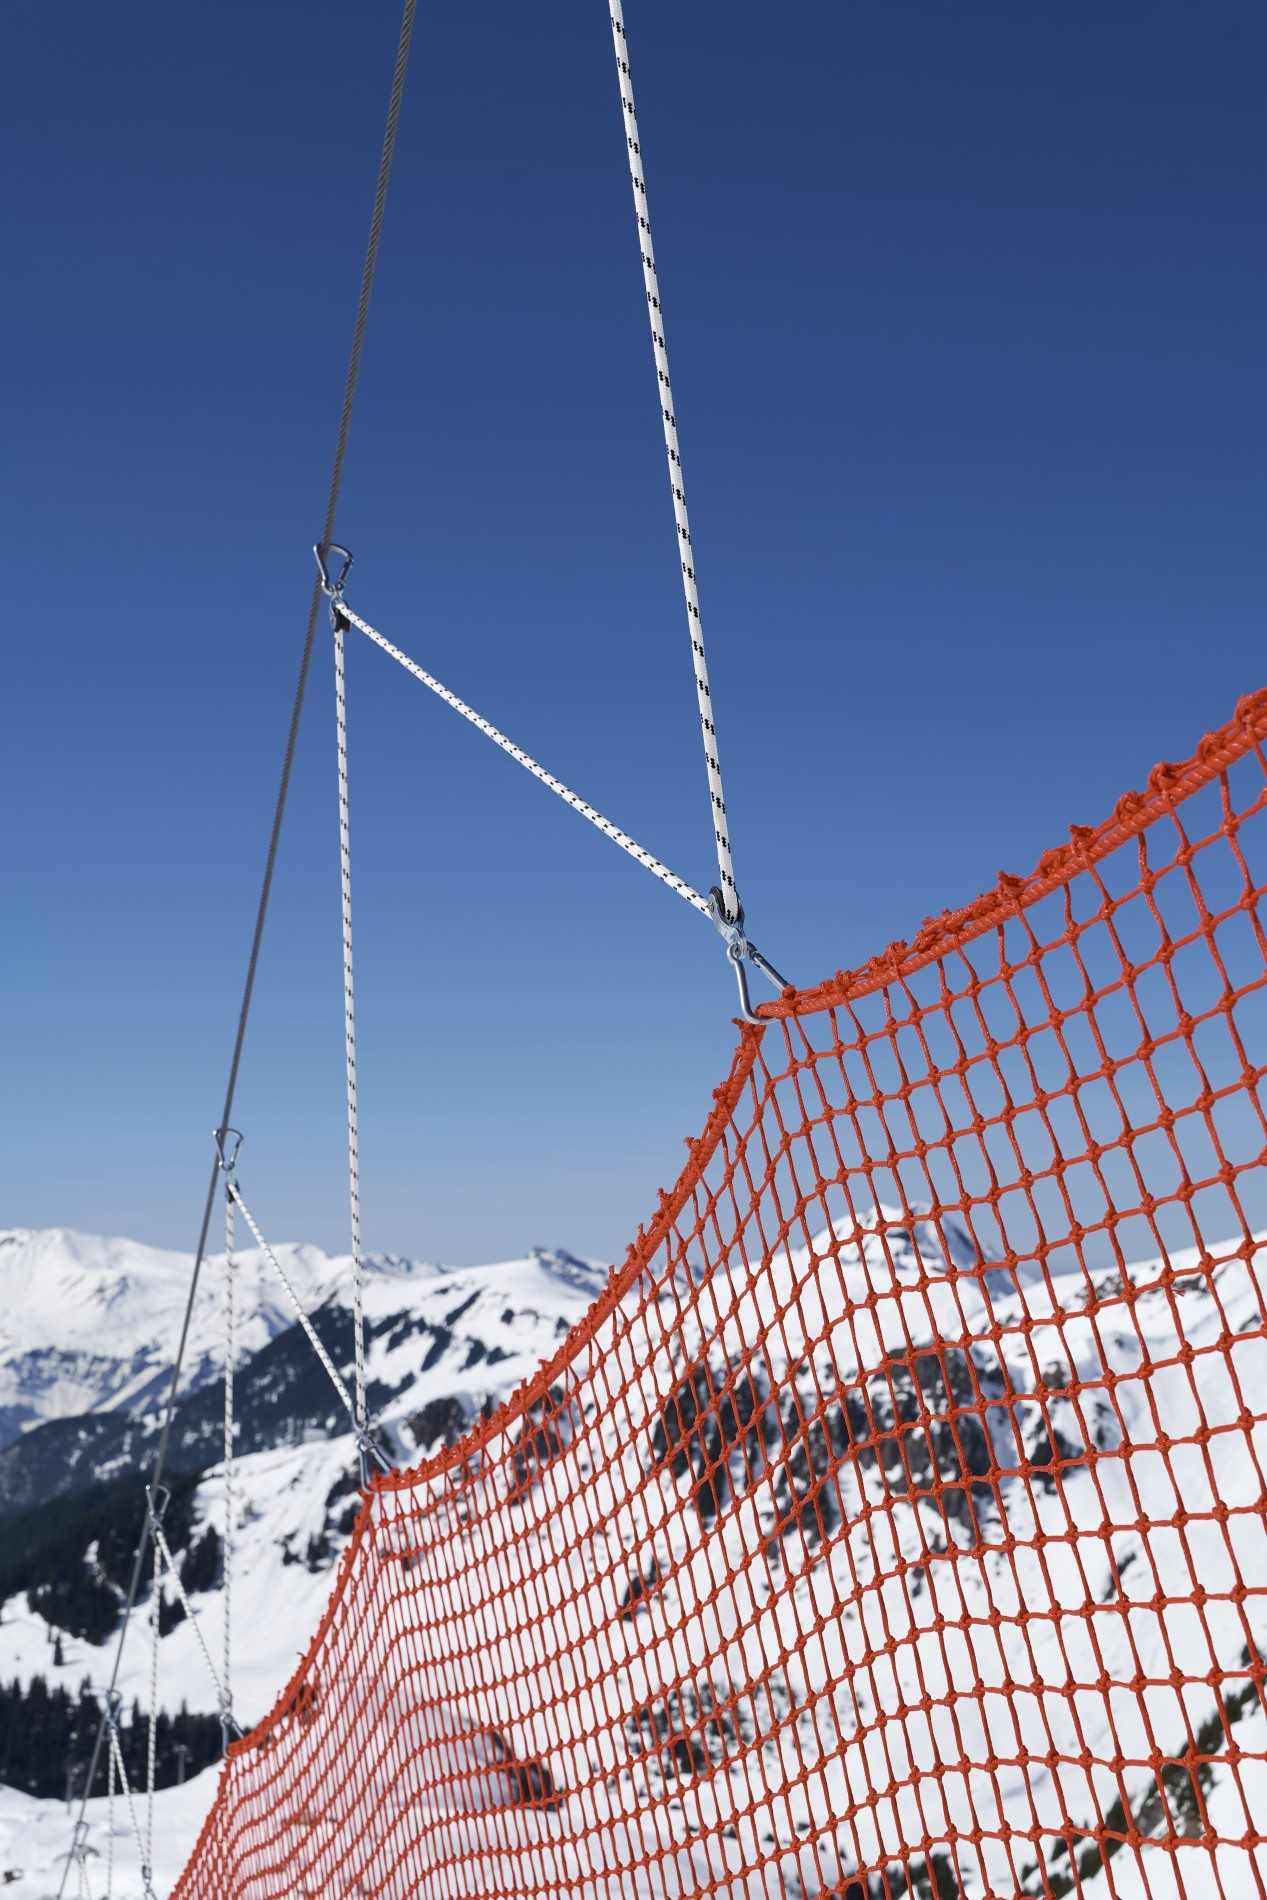 Jakob safety net on the ski slope in hasliberg